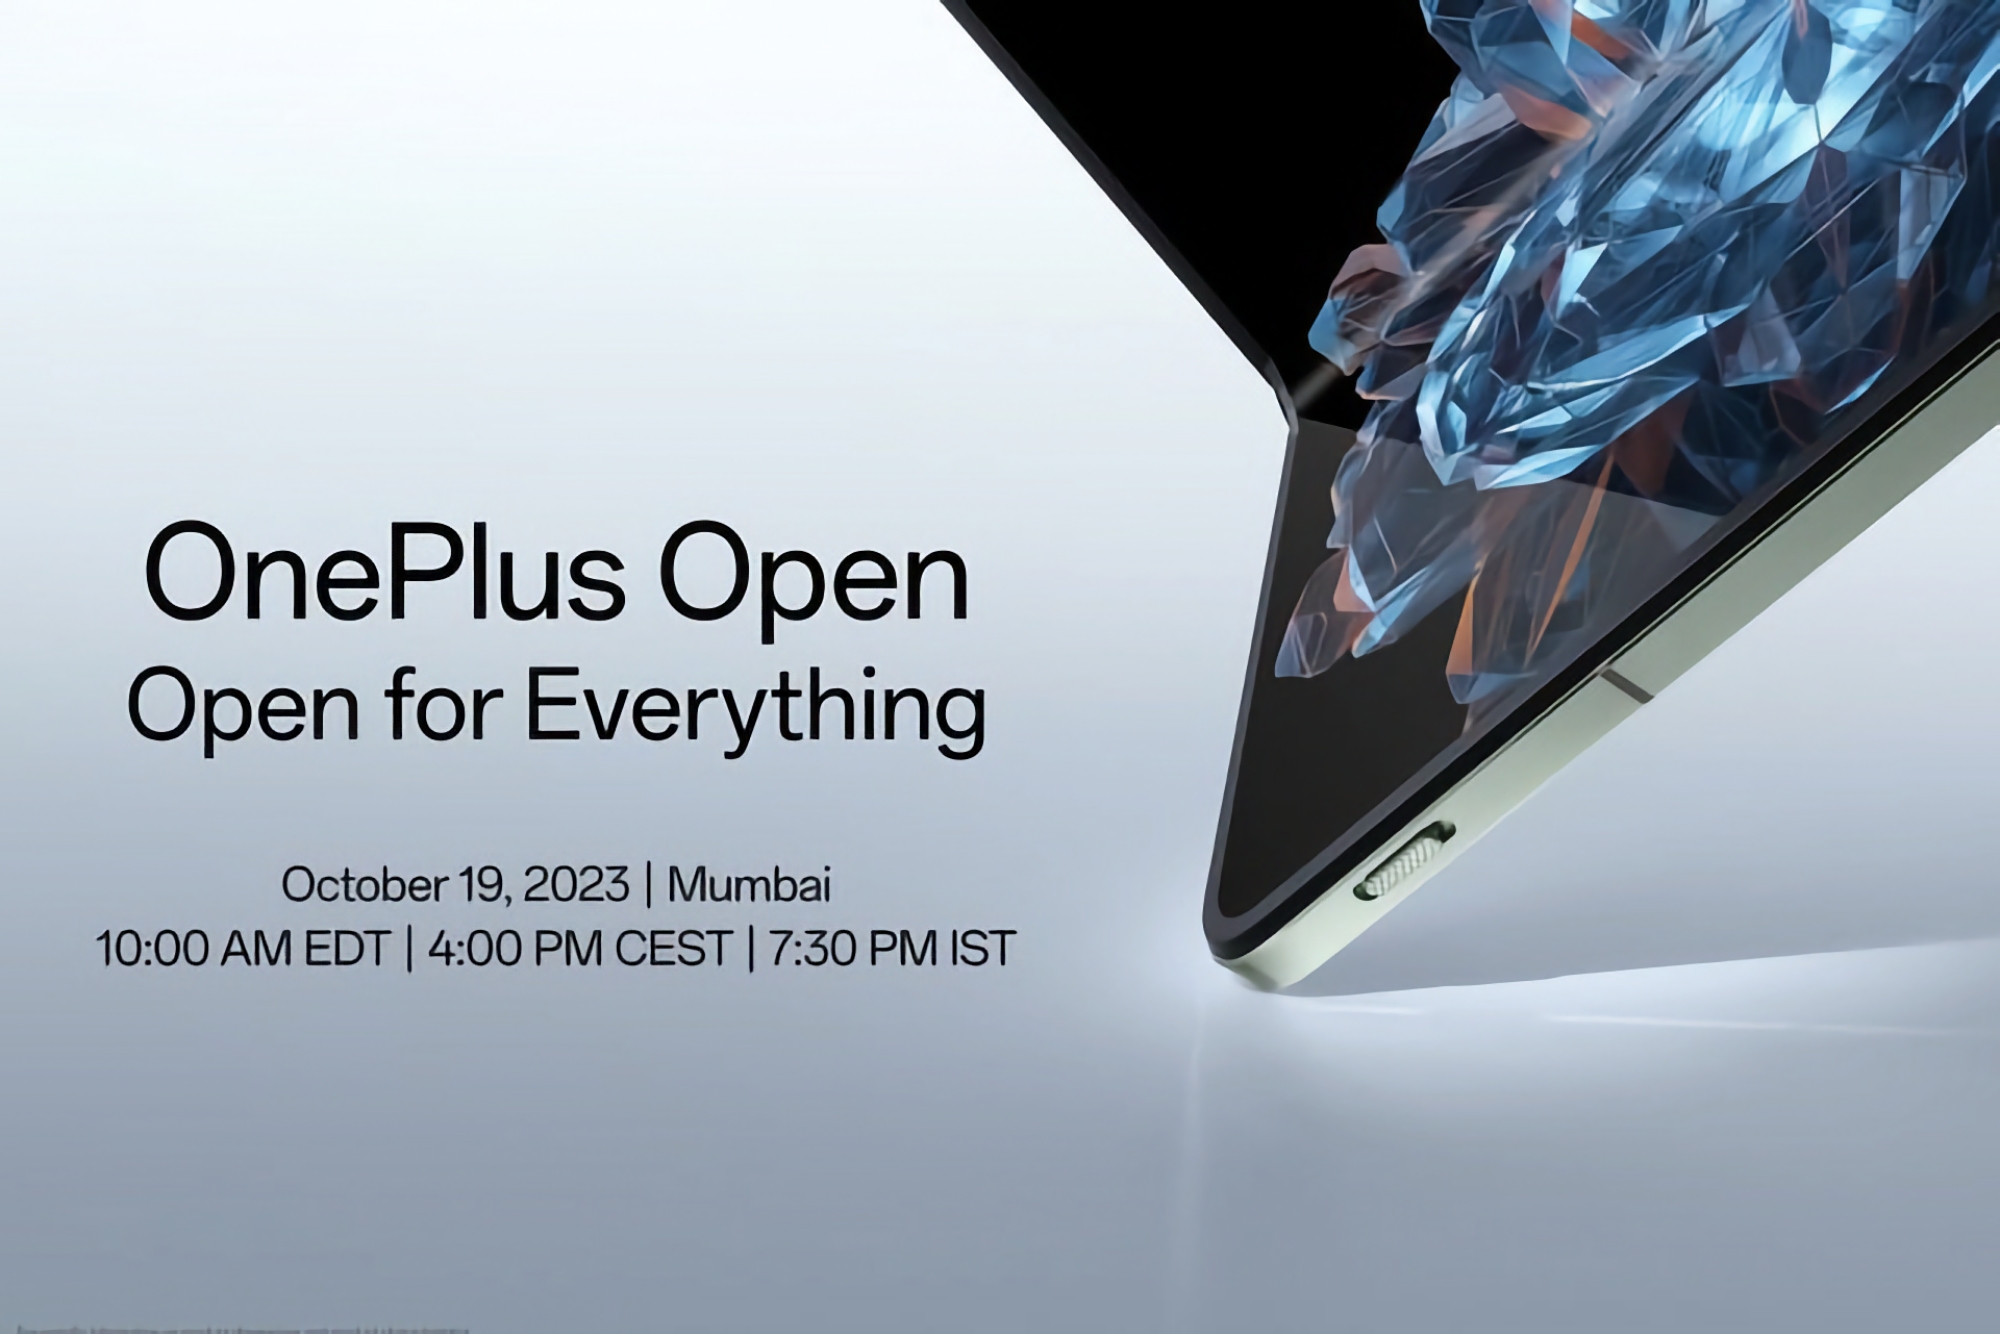 Het is officieel: de opvouwbare smartphone OnePlus Open debuteert op 19 oktober